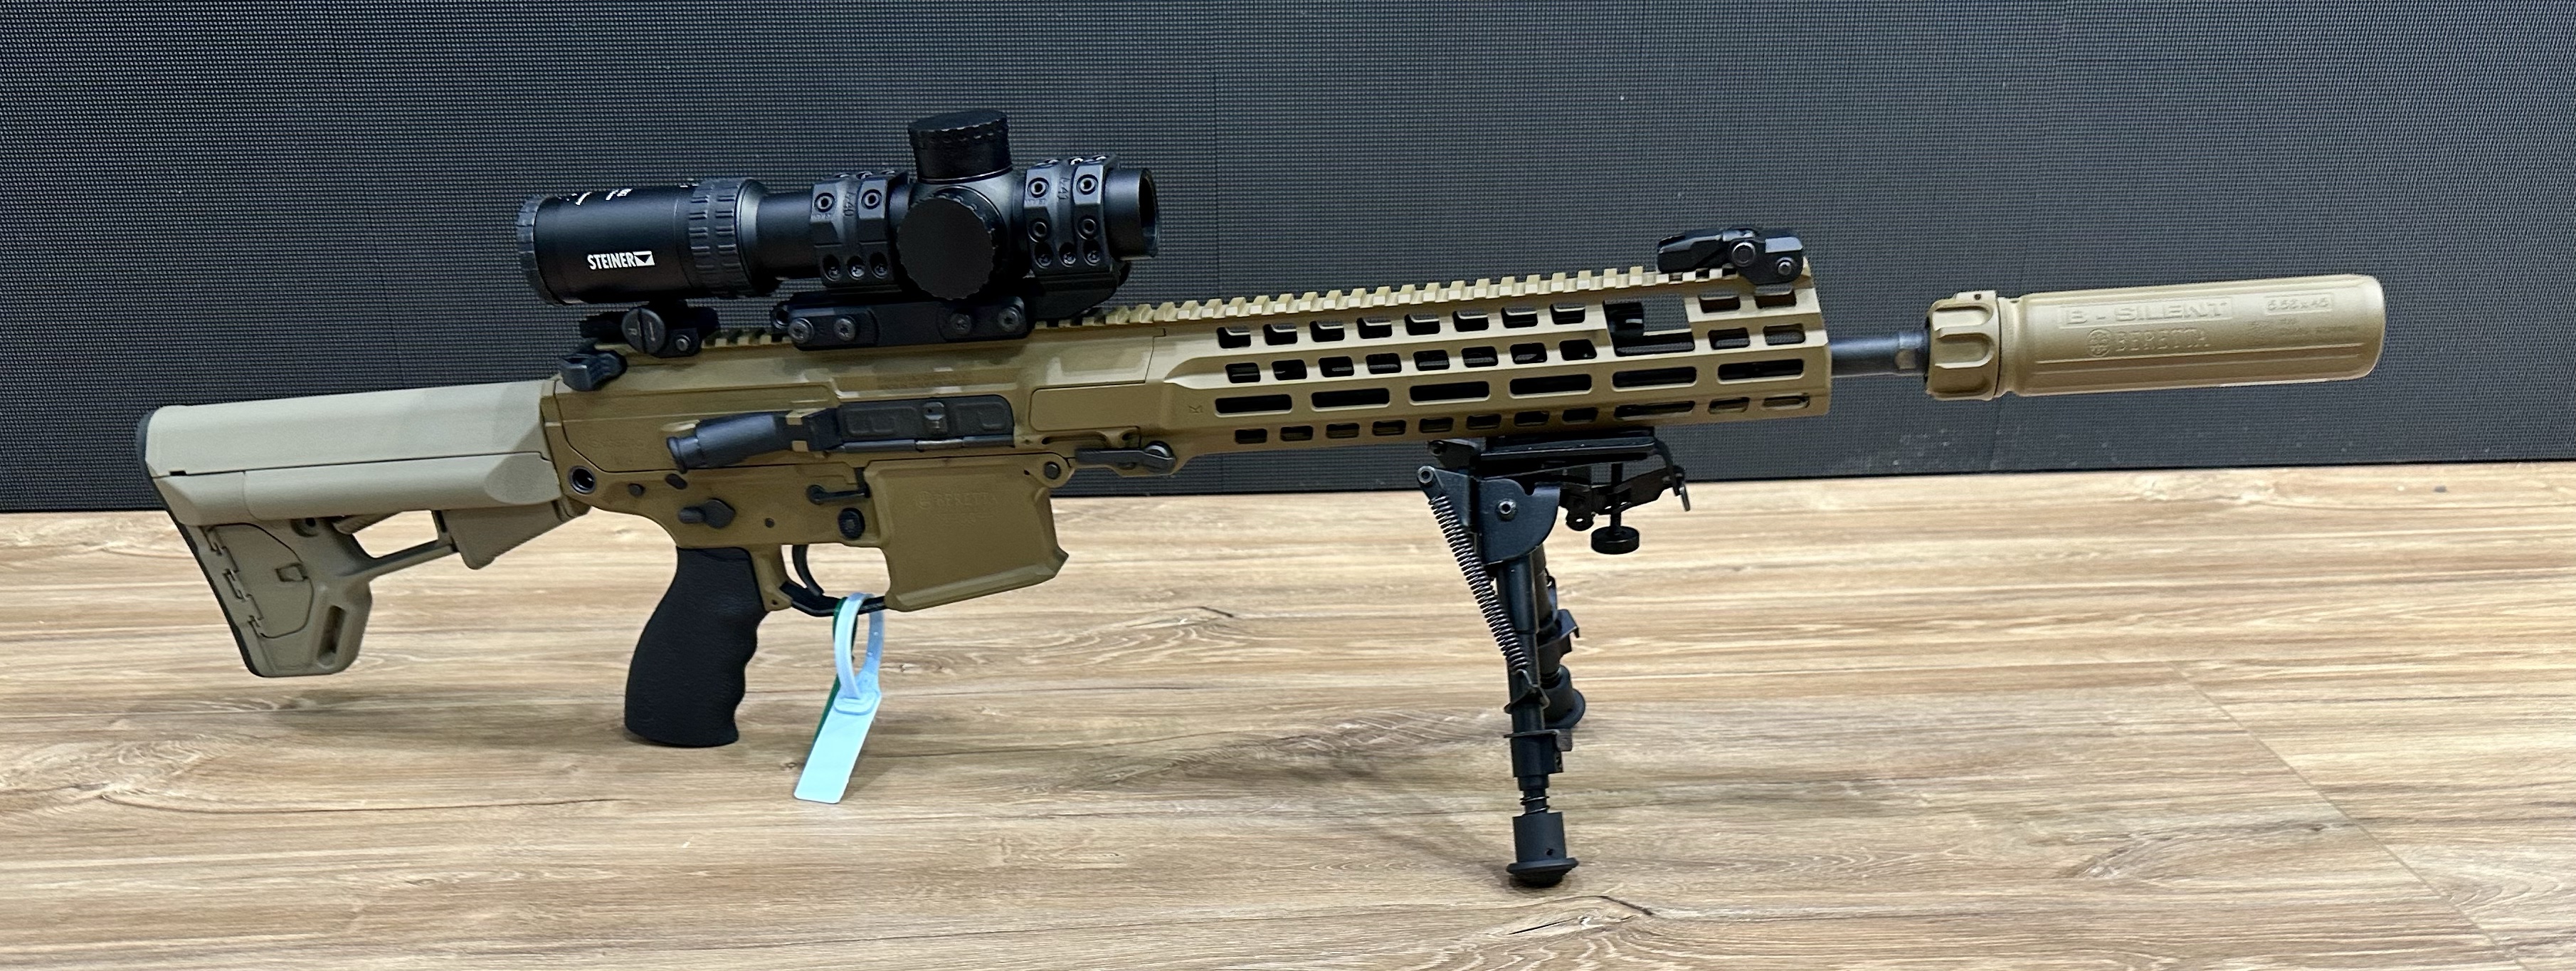 beretta assault rifle